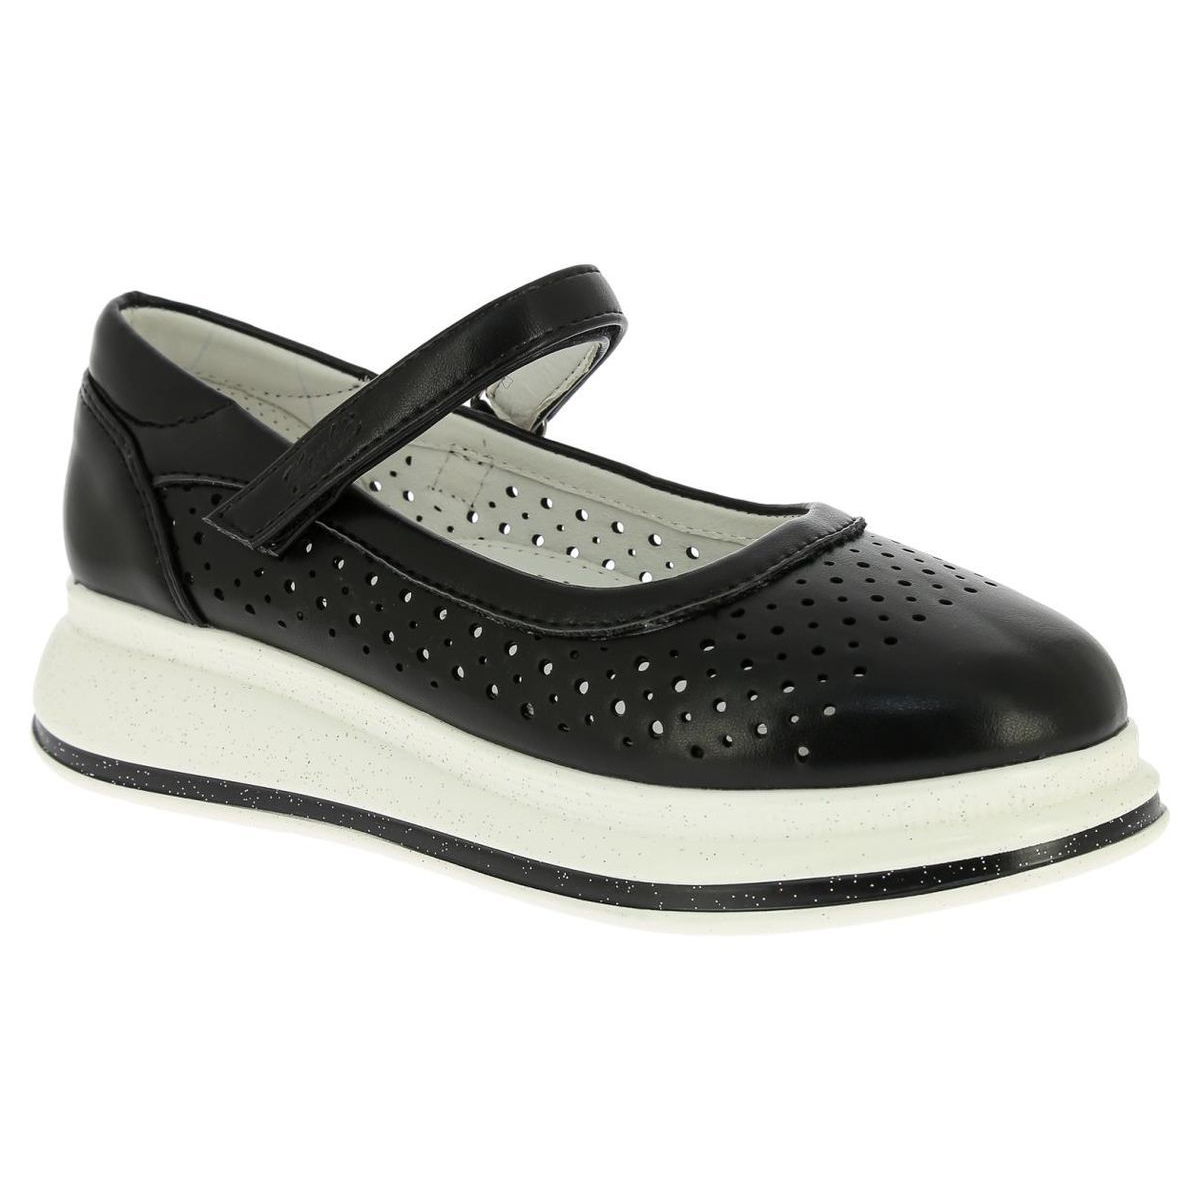 Туфли Kenka для девочек, размер 33, MSJ_2170-12_black зауженная юбка карандаш черного цвета в тонкую полоску для девочек